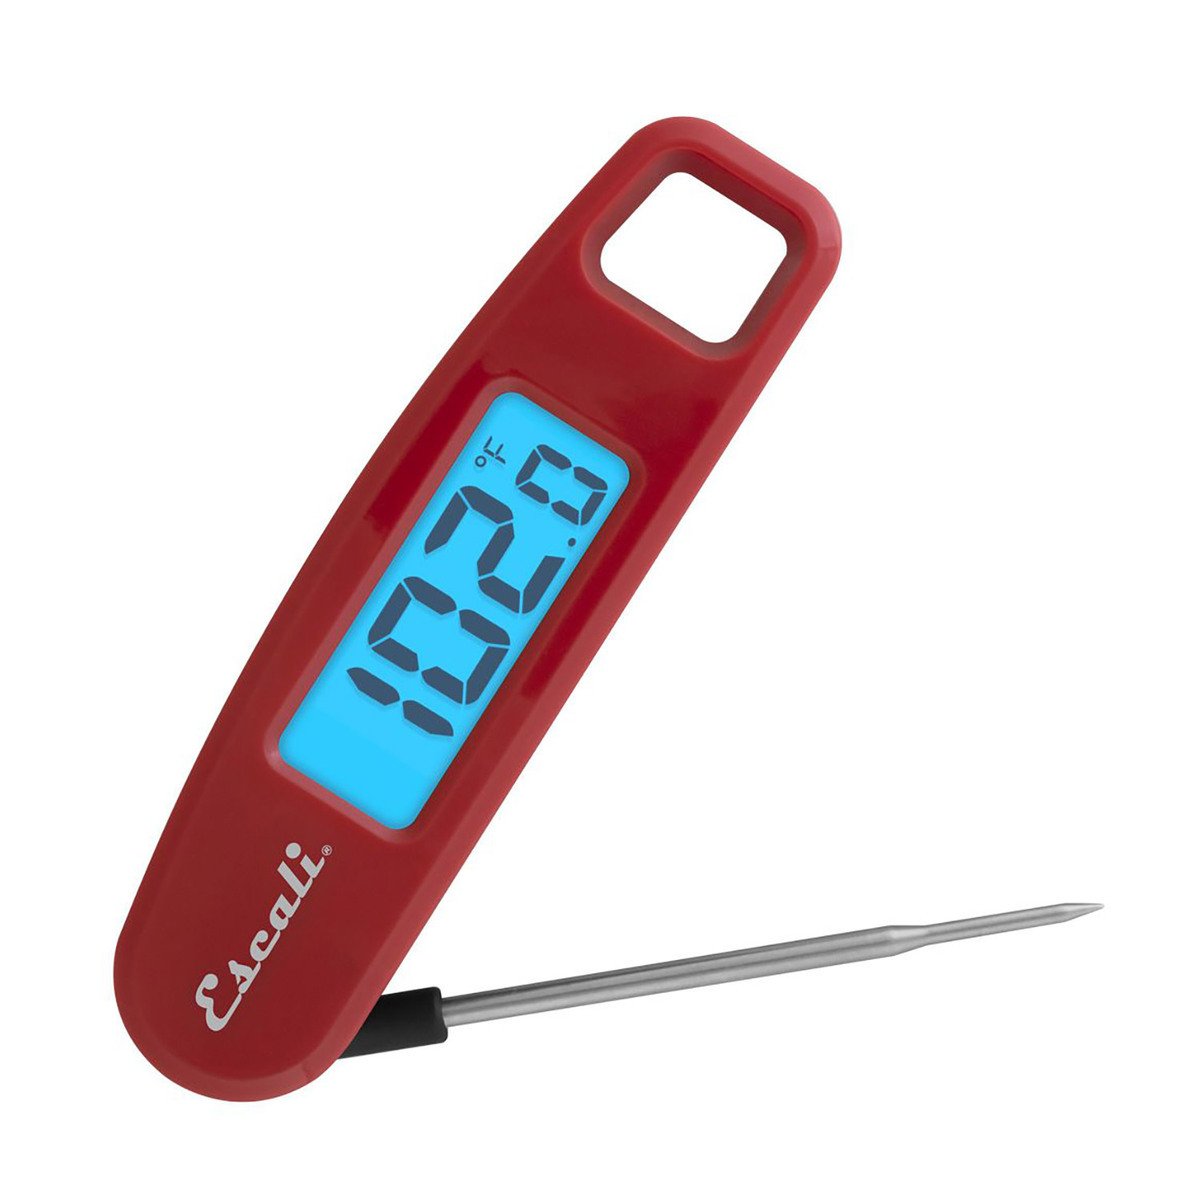 https://www.sportsmans.com/medias/escali-compact-folding-digital-folding-thermometer-red-1754051-1.jpg?context=bWFzdGVyfGltYWdlc3wxMTU2ODV8aW1hZ2UvanBlZ3xoNjkvaDYzLzEwNTcxODc5NjQ1MjE0LzE3NTQwNTEtMV9iYXNlLWNvbnZlcnNpb25Gb3JtYXRfMTIwMC1jb252ZXJzaW9uRm9ybWF0fGQ5NWViM2FhYTI2Y2QxODMwYTcwNTRkYWNiM2JjNzk0OWMwYTBkZDdiODUzZjgzMDkzOTk0Nzg2MmNlMThkOTA